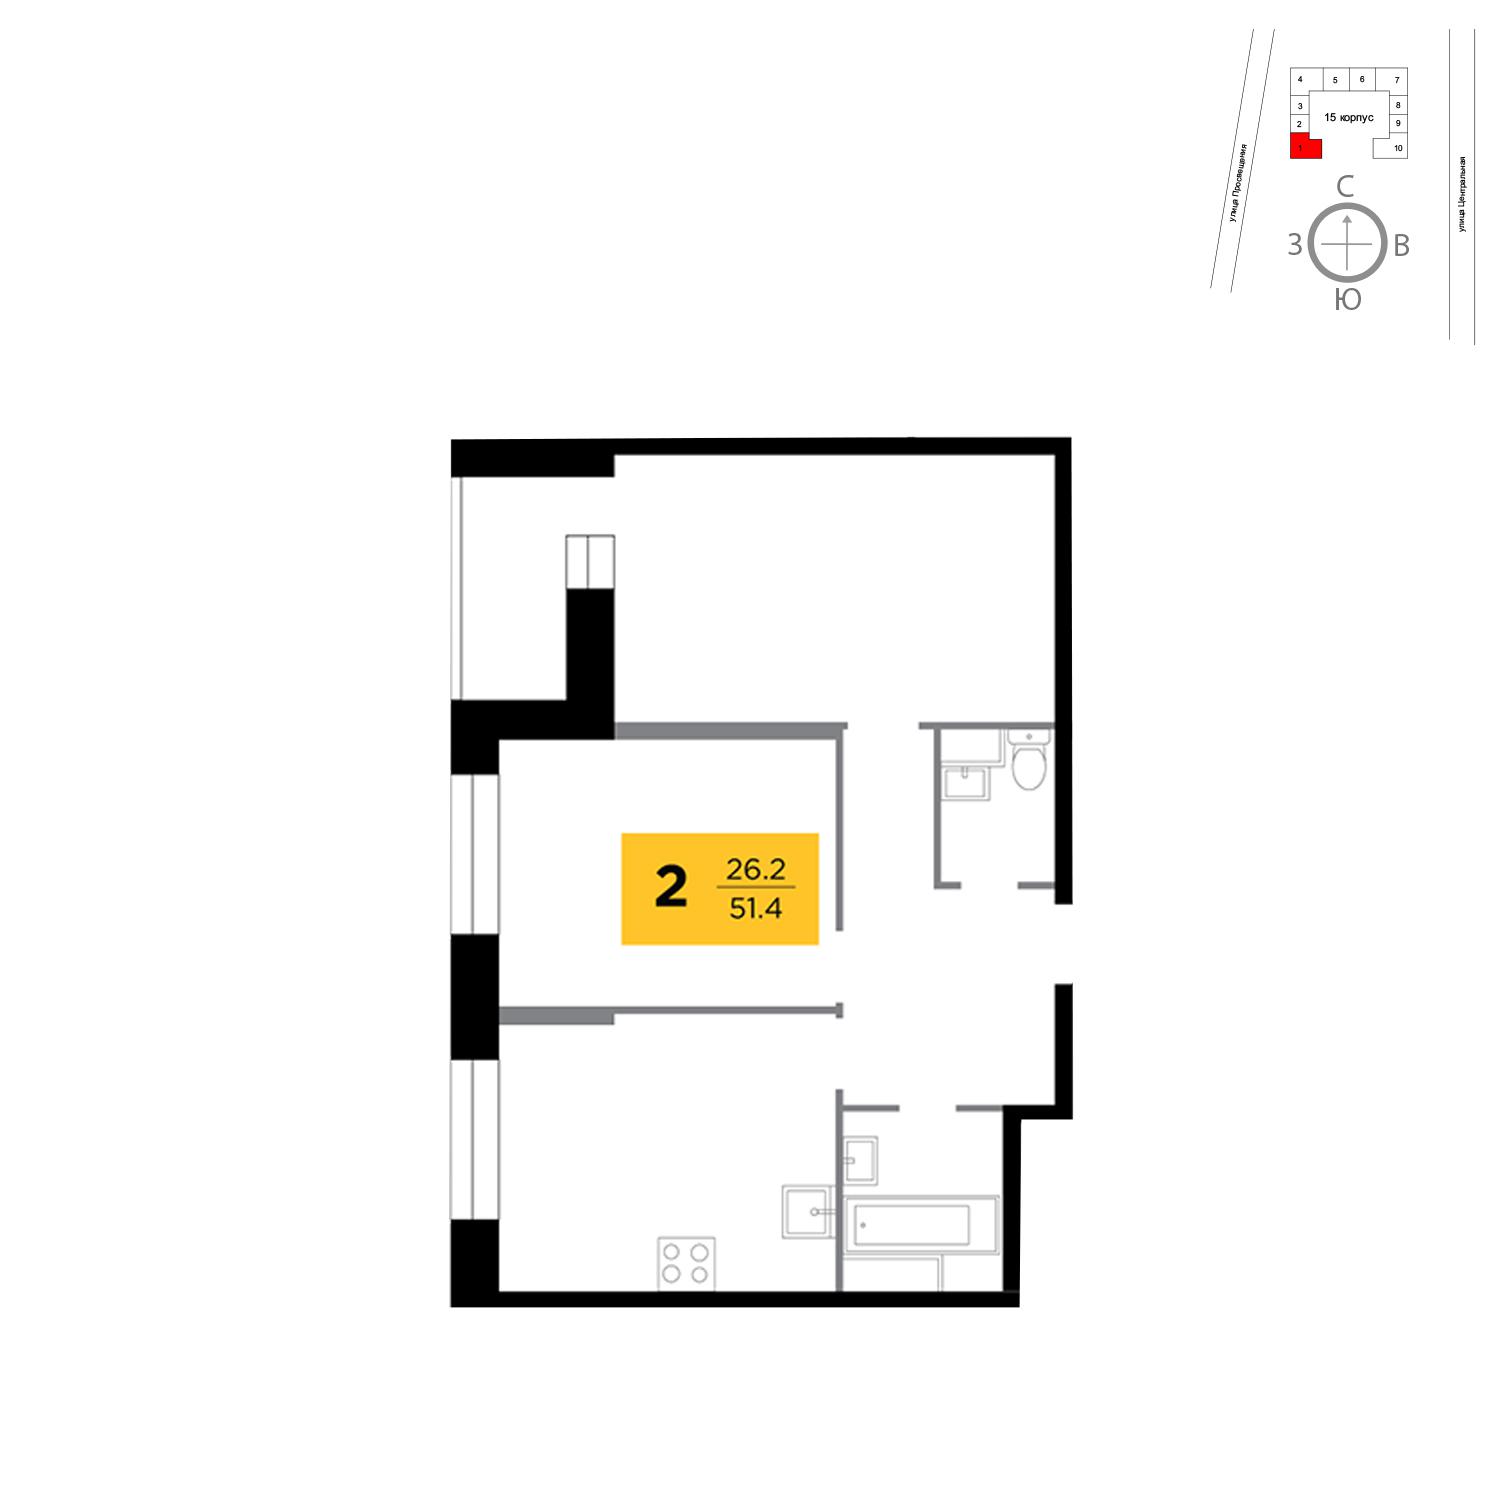 Продаётся 2-комнатная квартира в новостройке 51.4 кв.м. этаж 8/16 за 4 102 593 руб 